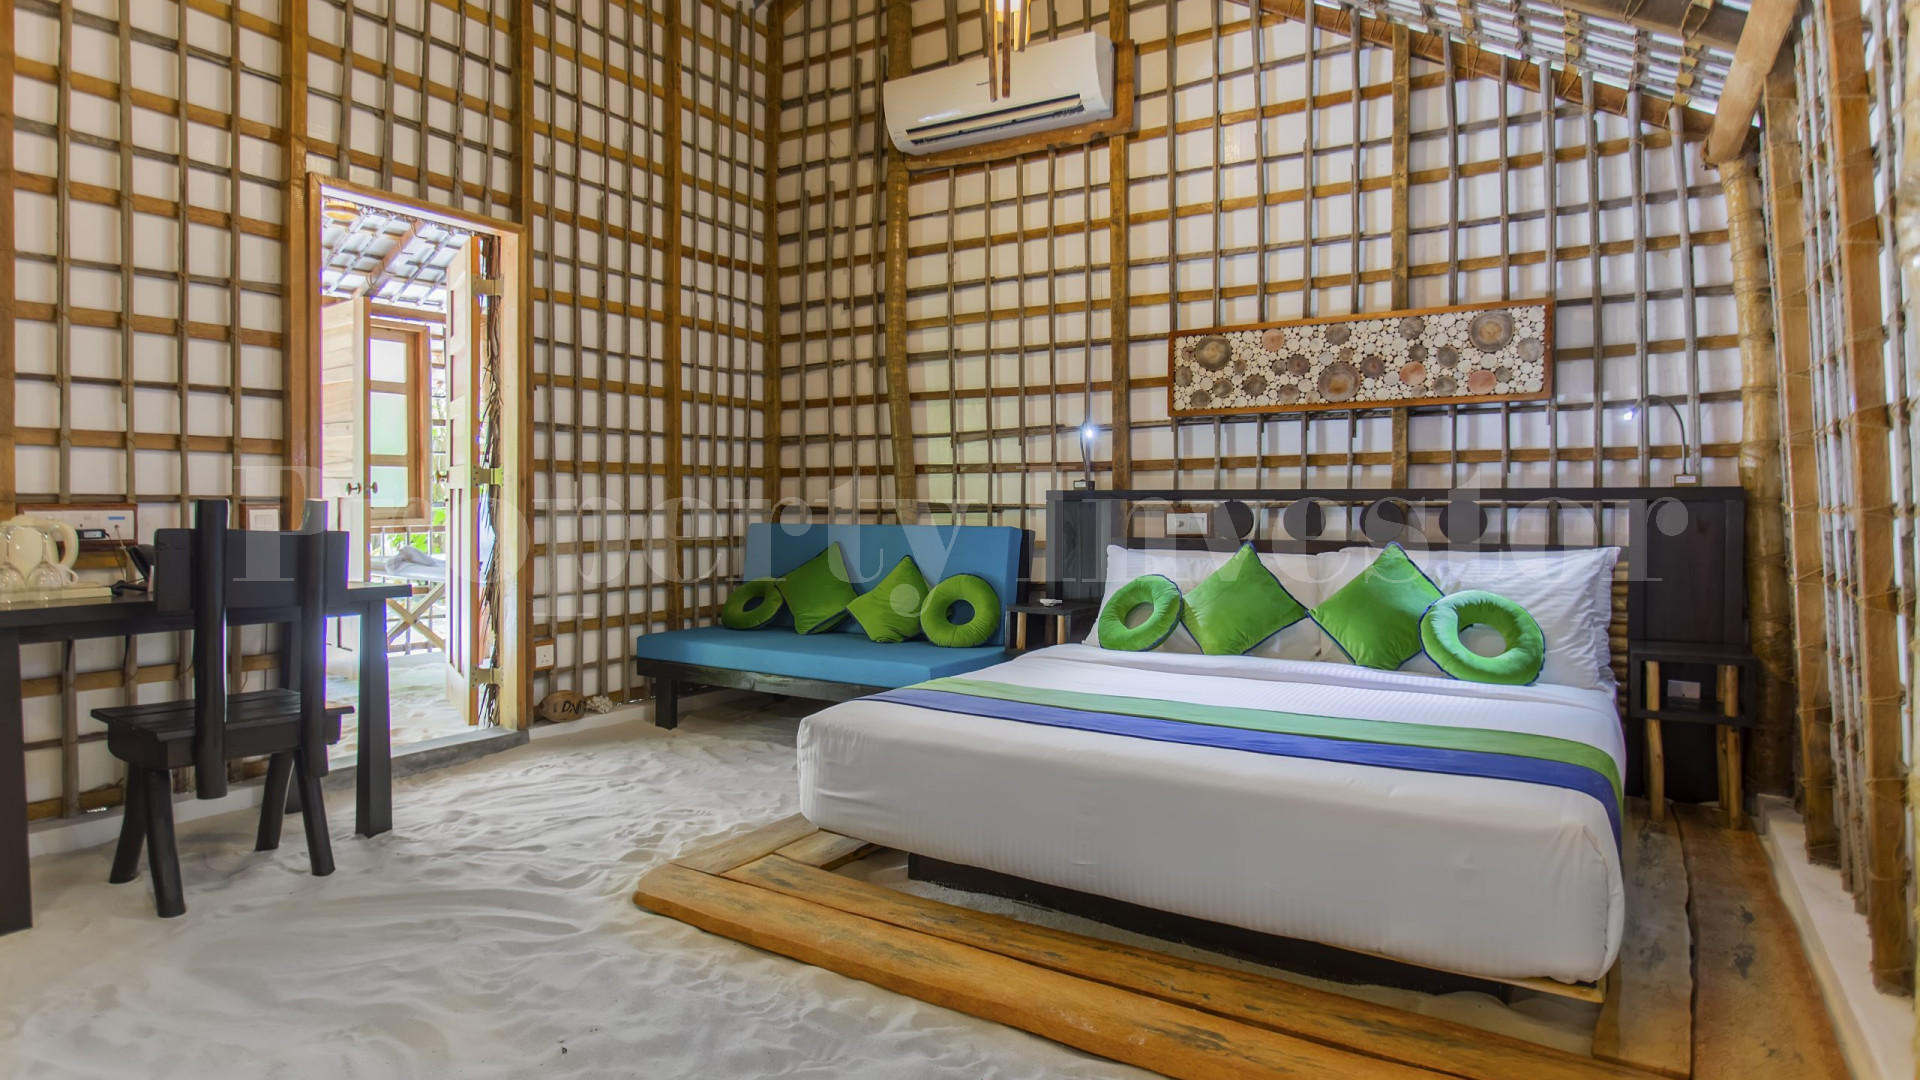 Островной эко отель на 32 номера с готовым проектом расширения и строительства водных бунгало на Мальдивах